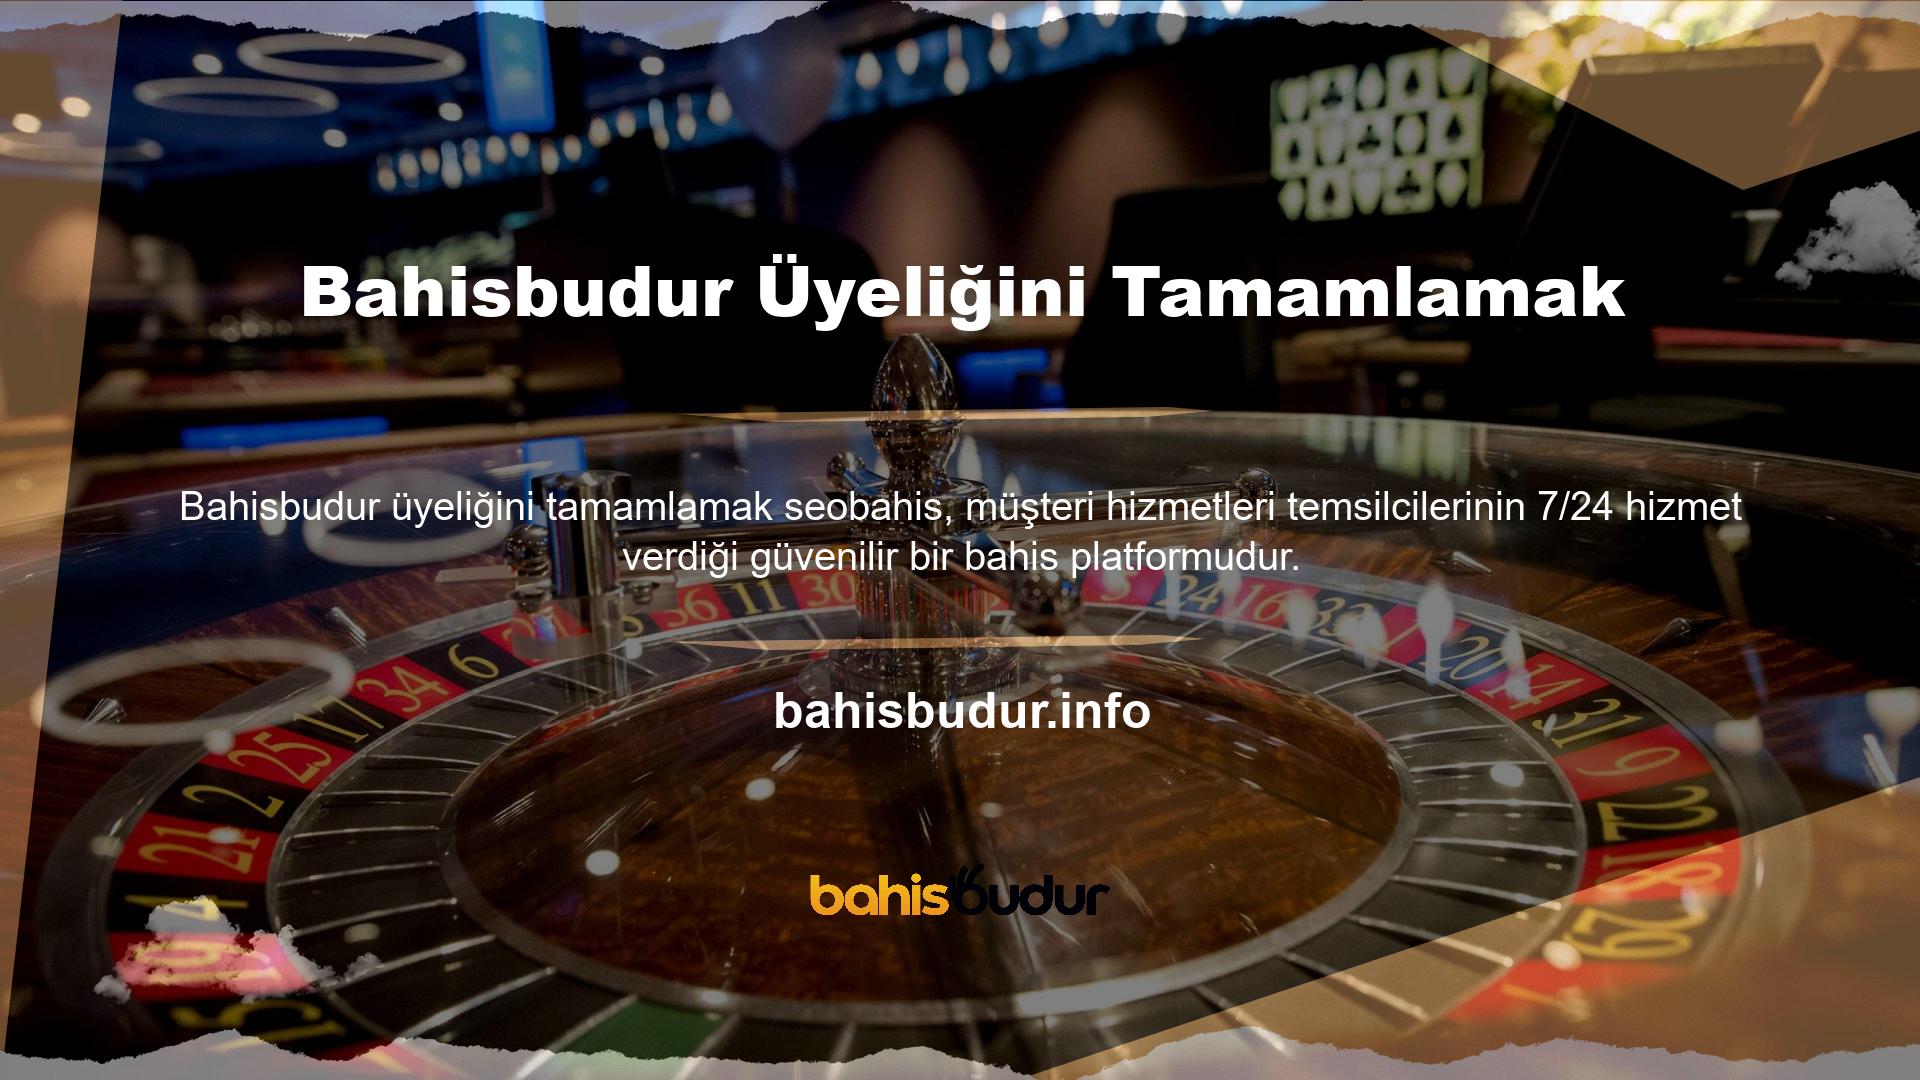 Bahisbudur üyeliği tamamlanma süreci Üye değilseniz, bahis sitesi